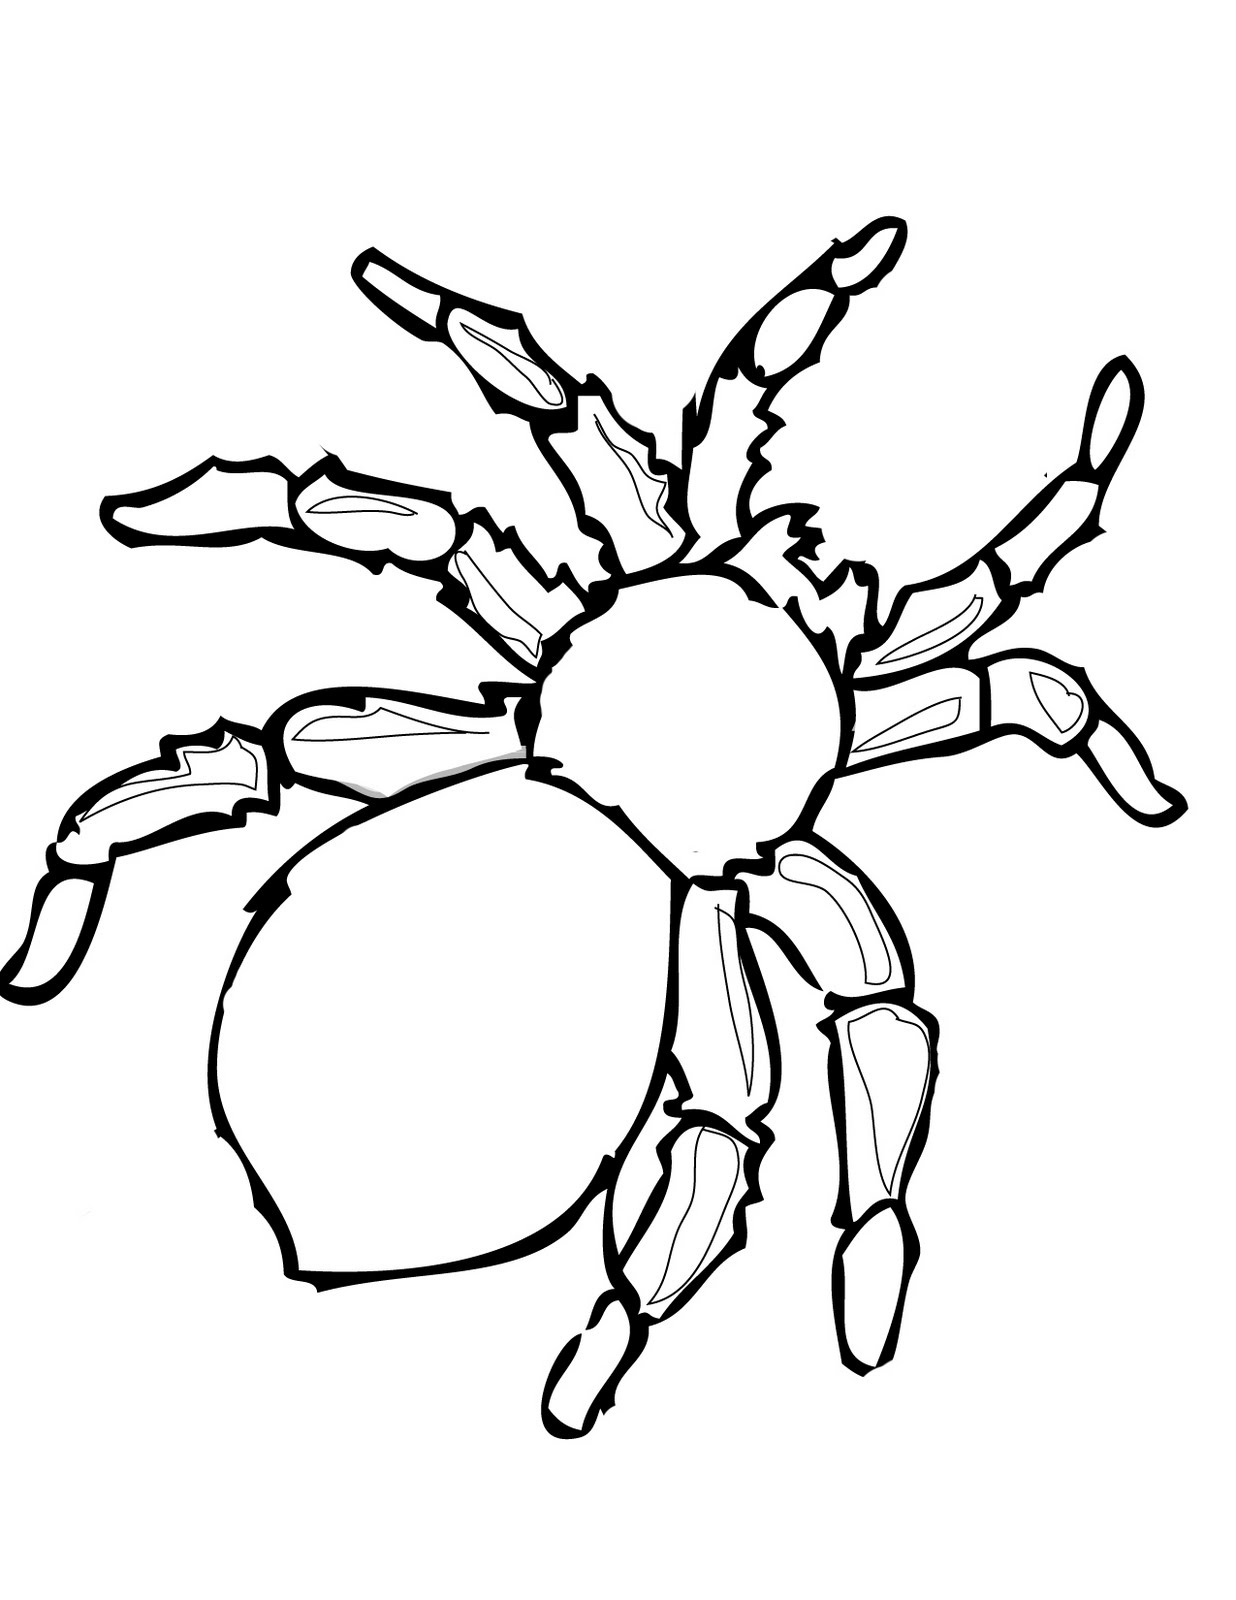 31+ Spider Outline Clip Art